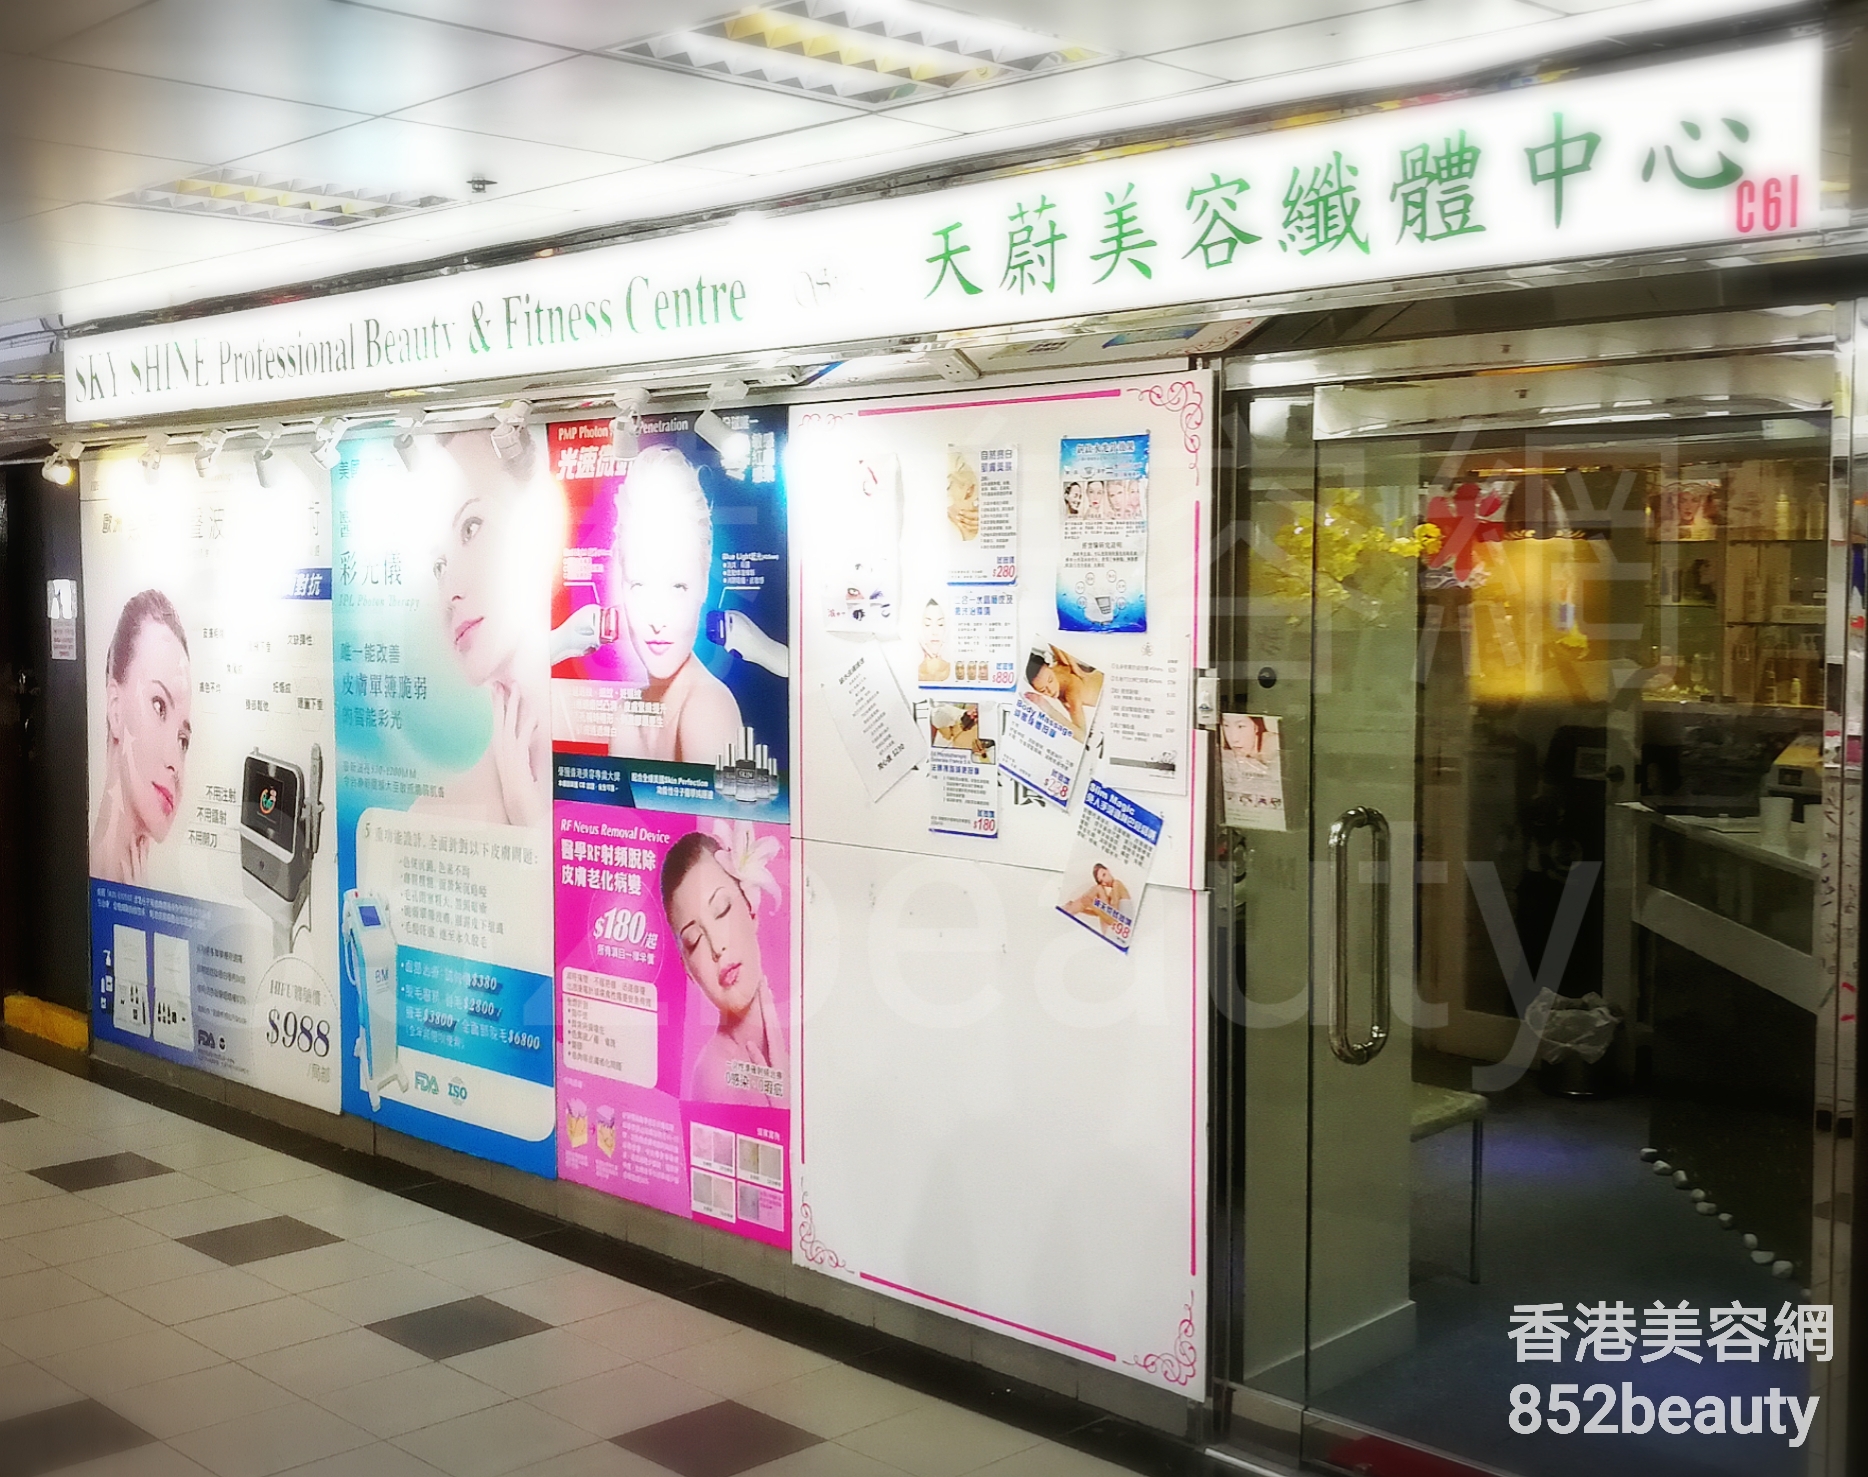 香港美容網 Hong Kong Beauty Salon 美容院 / 美容師: 天蔚美容纖體中心